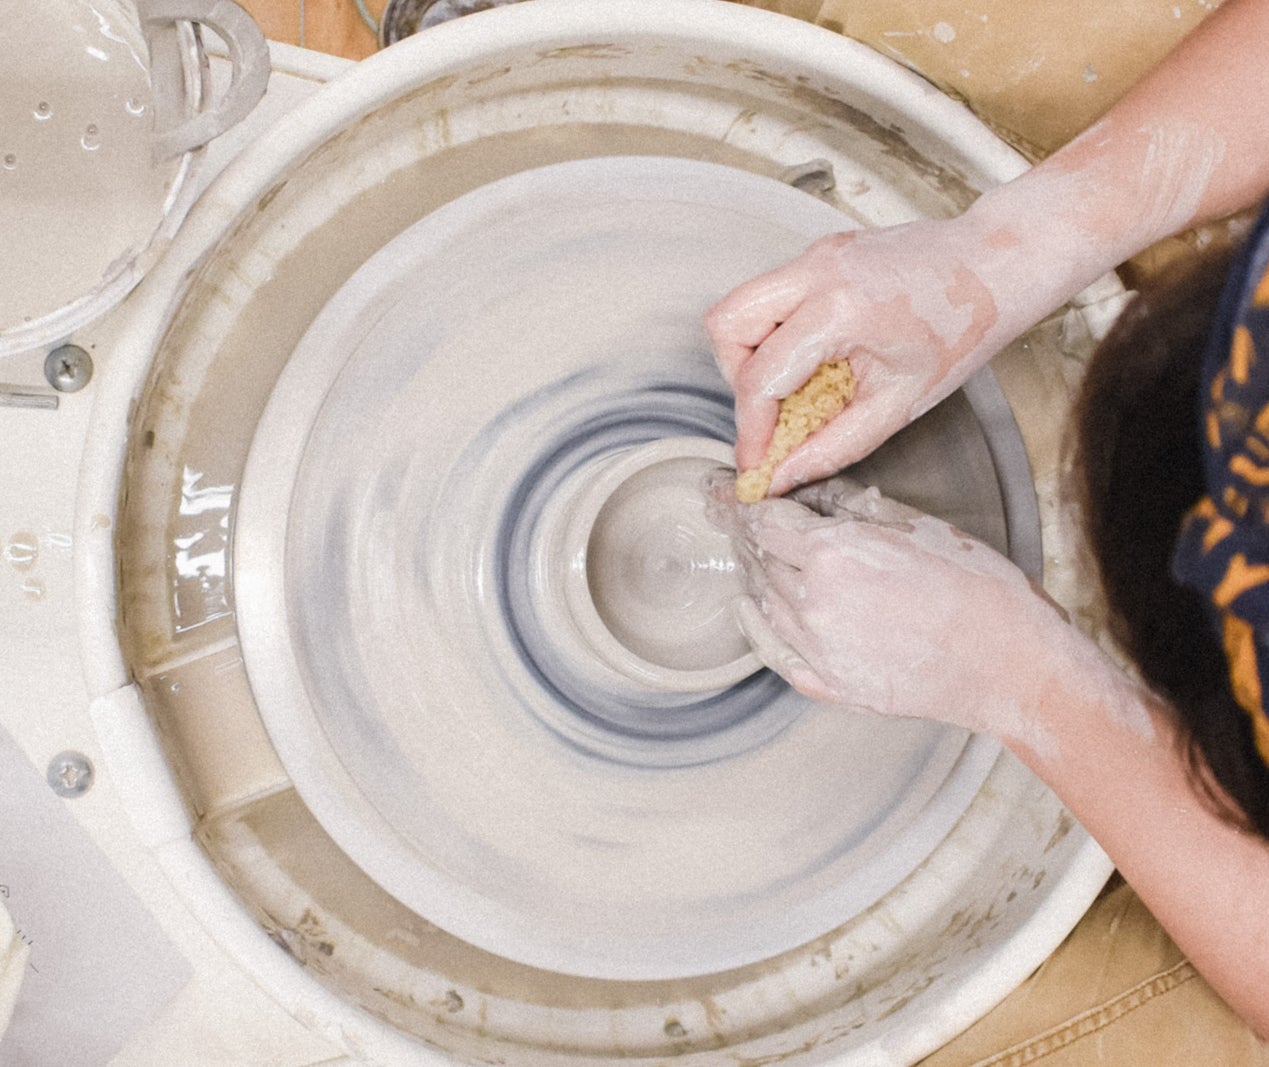 90 Min Pottery Wheel Throw Class - Creative Hands Art School